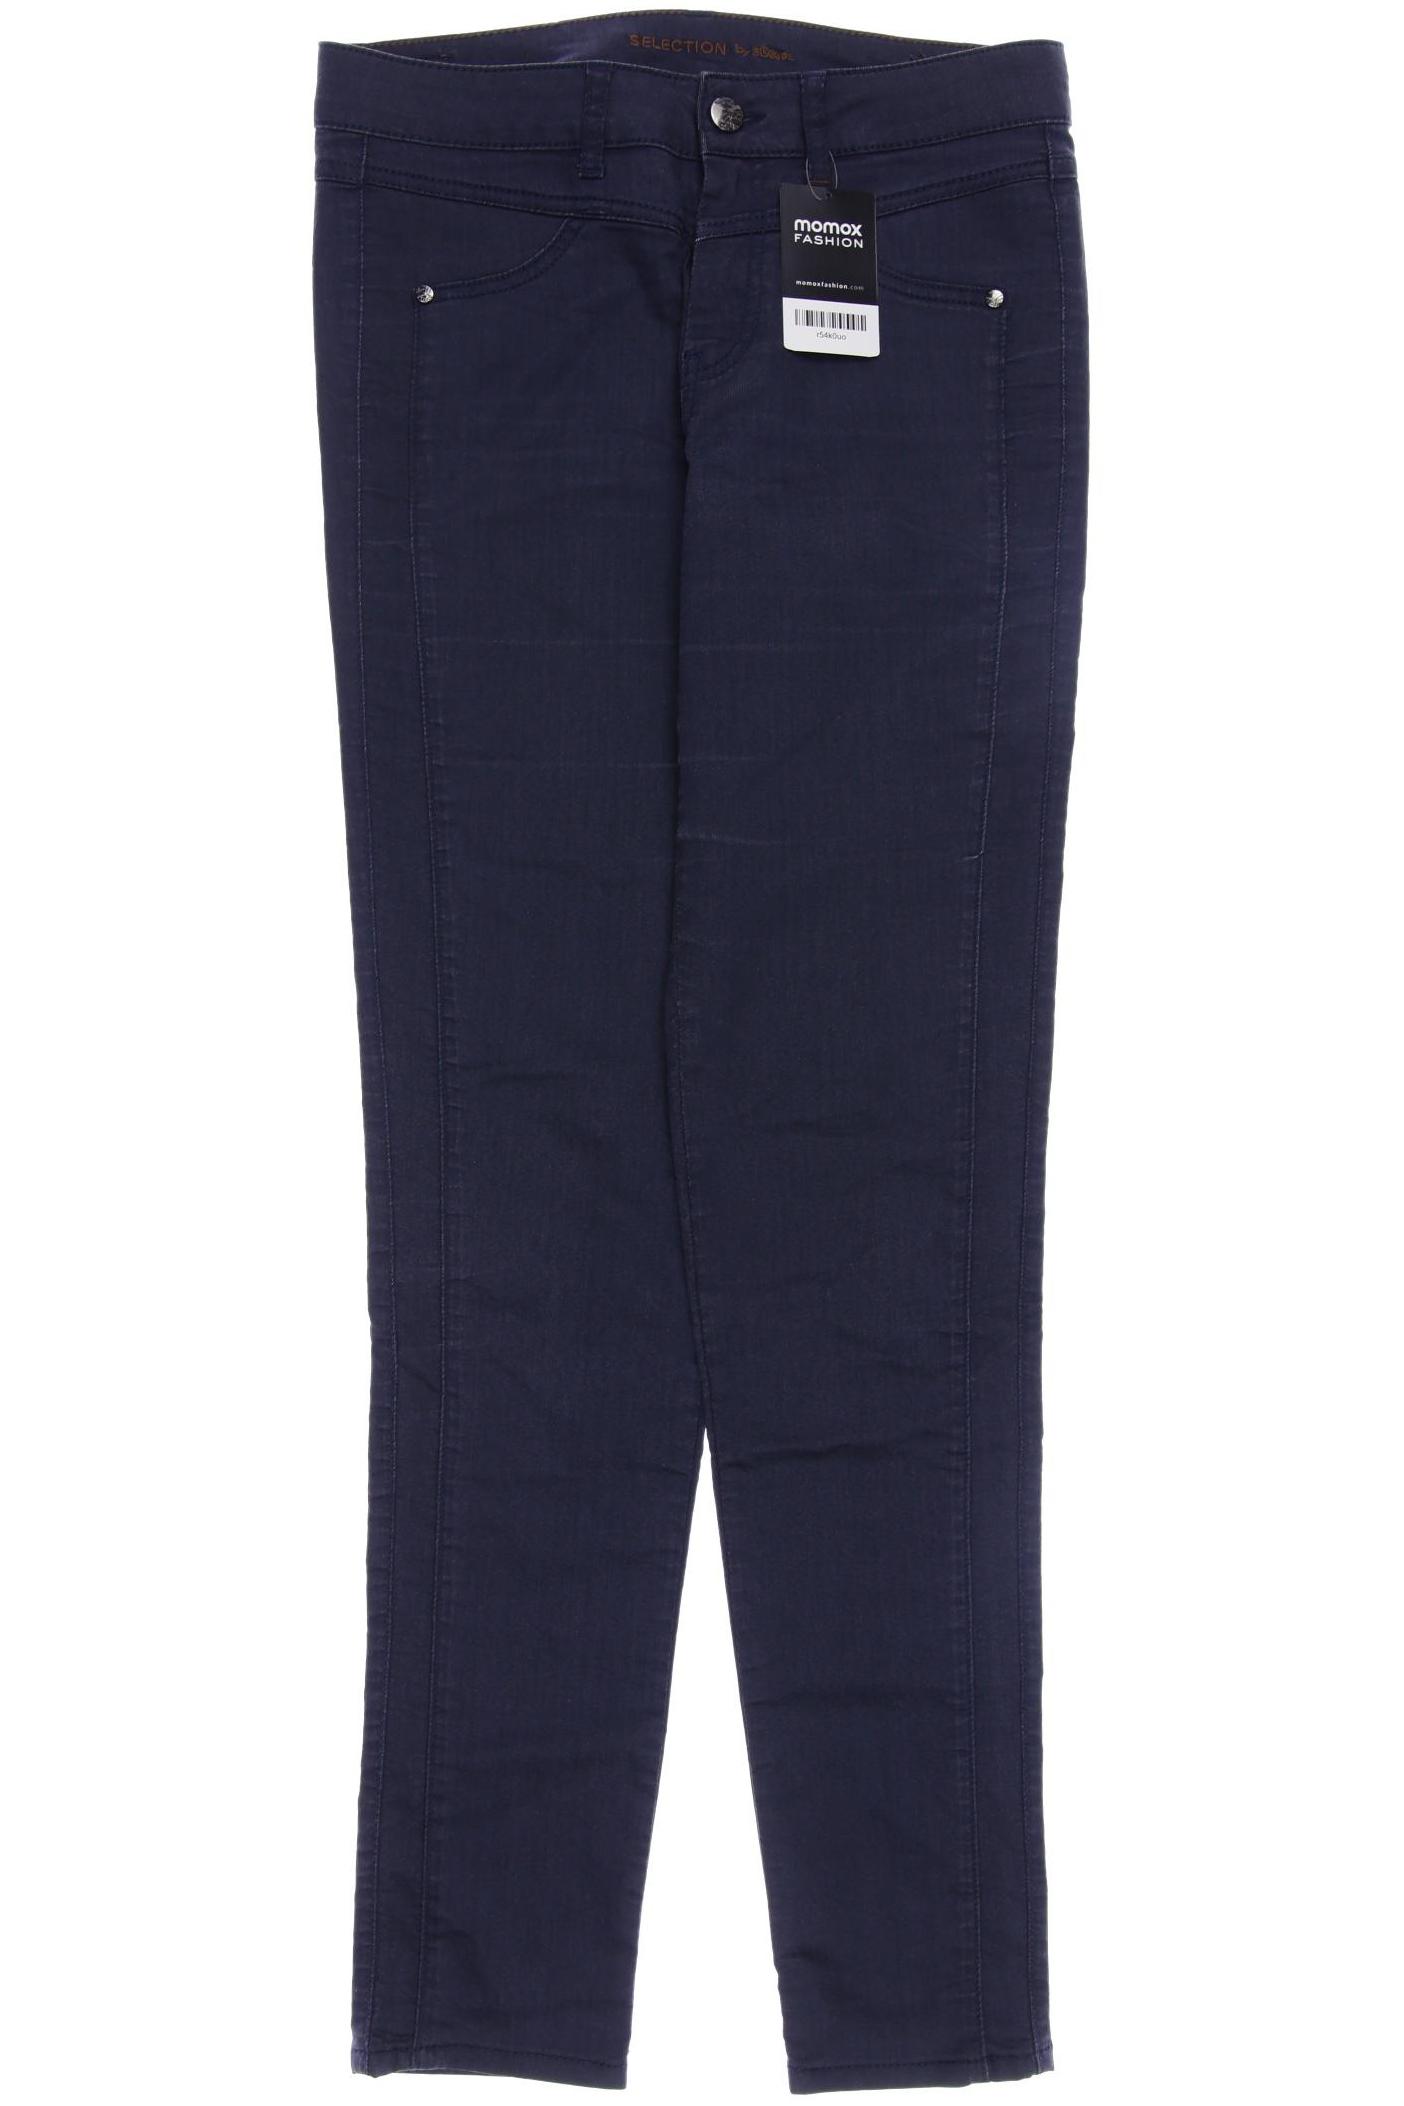 s.Oliver Selection Damen Jeans, marineblau von s.Oliver Selection